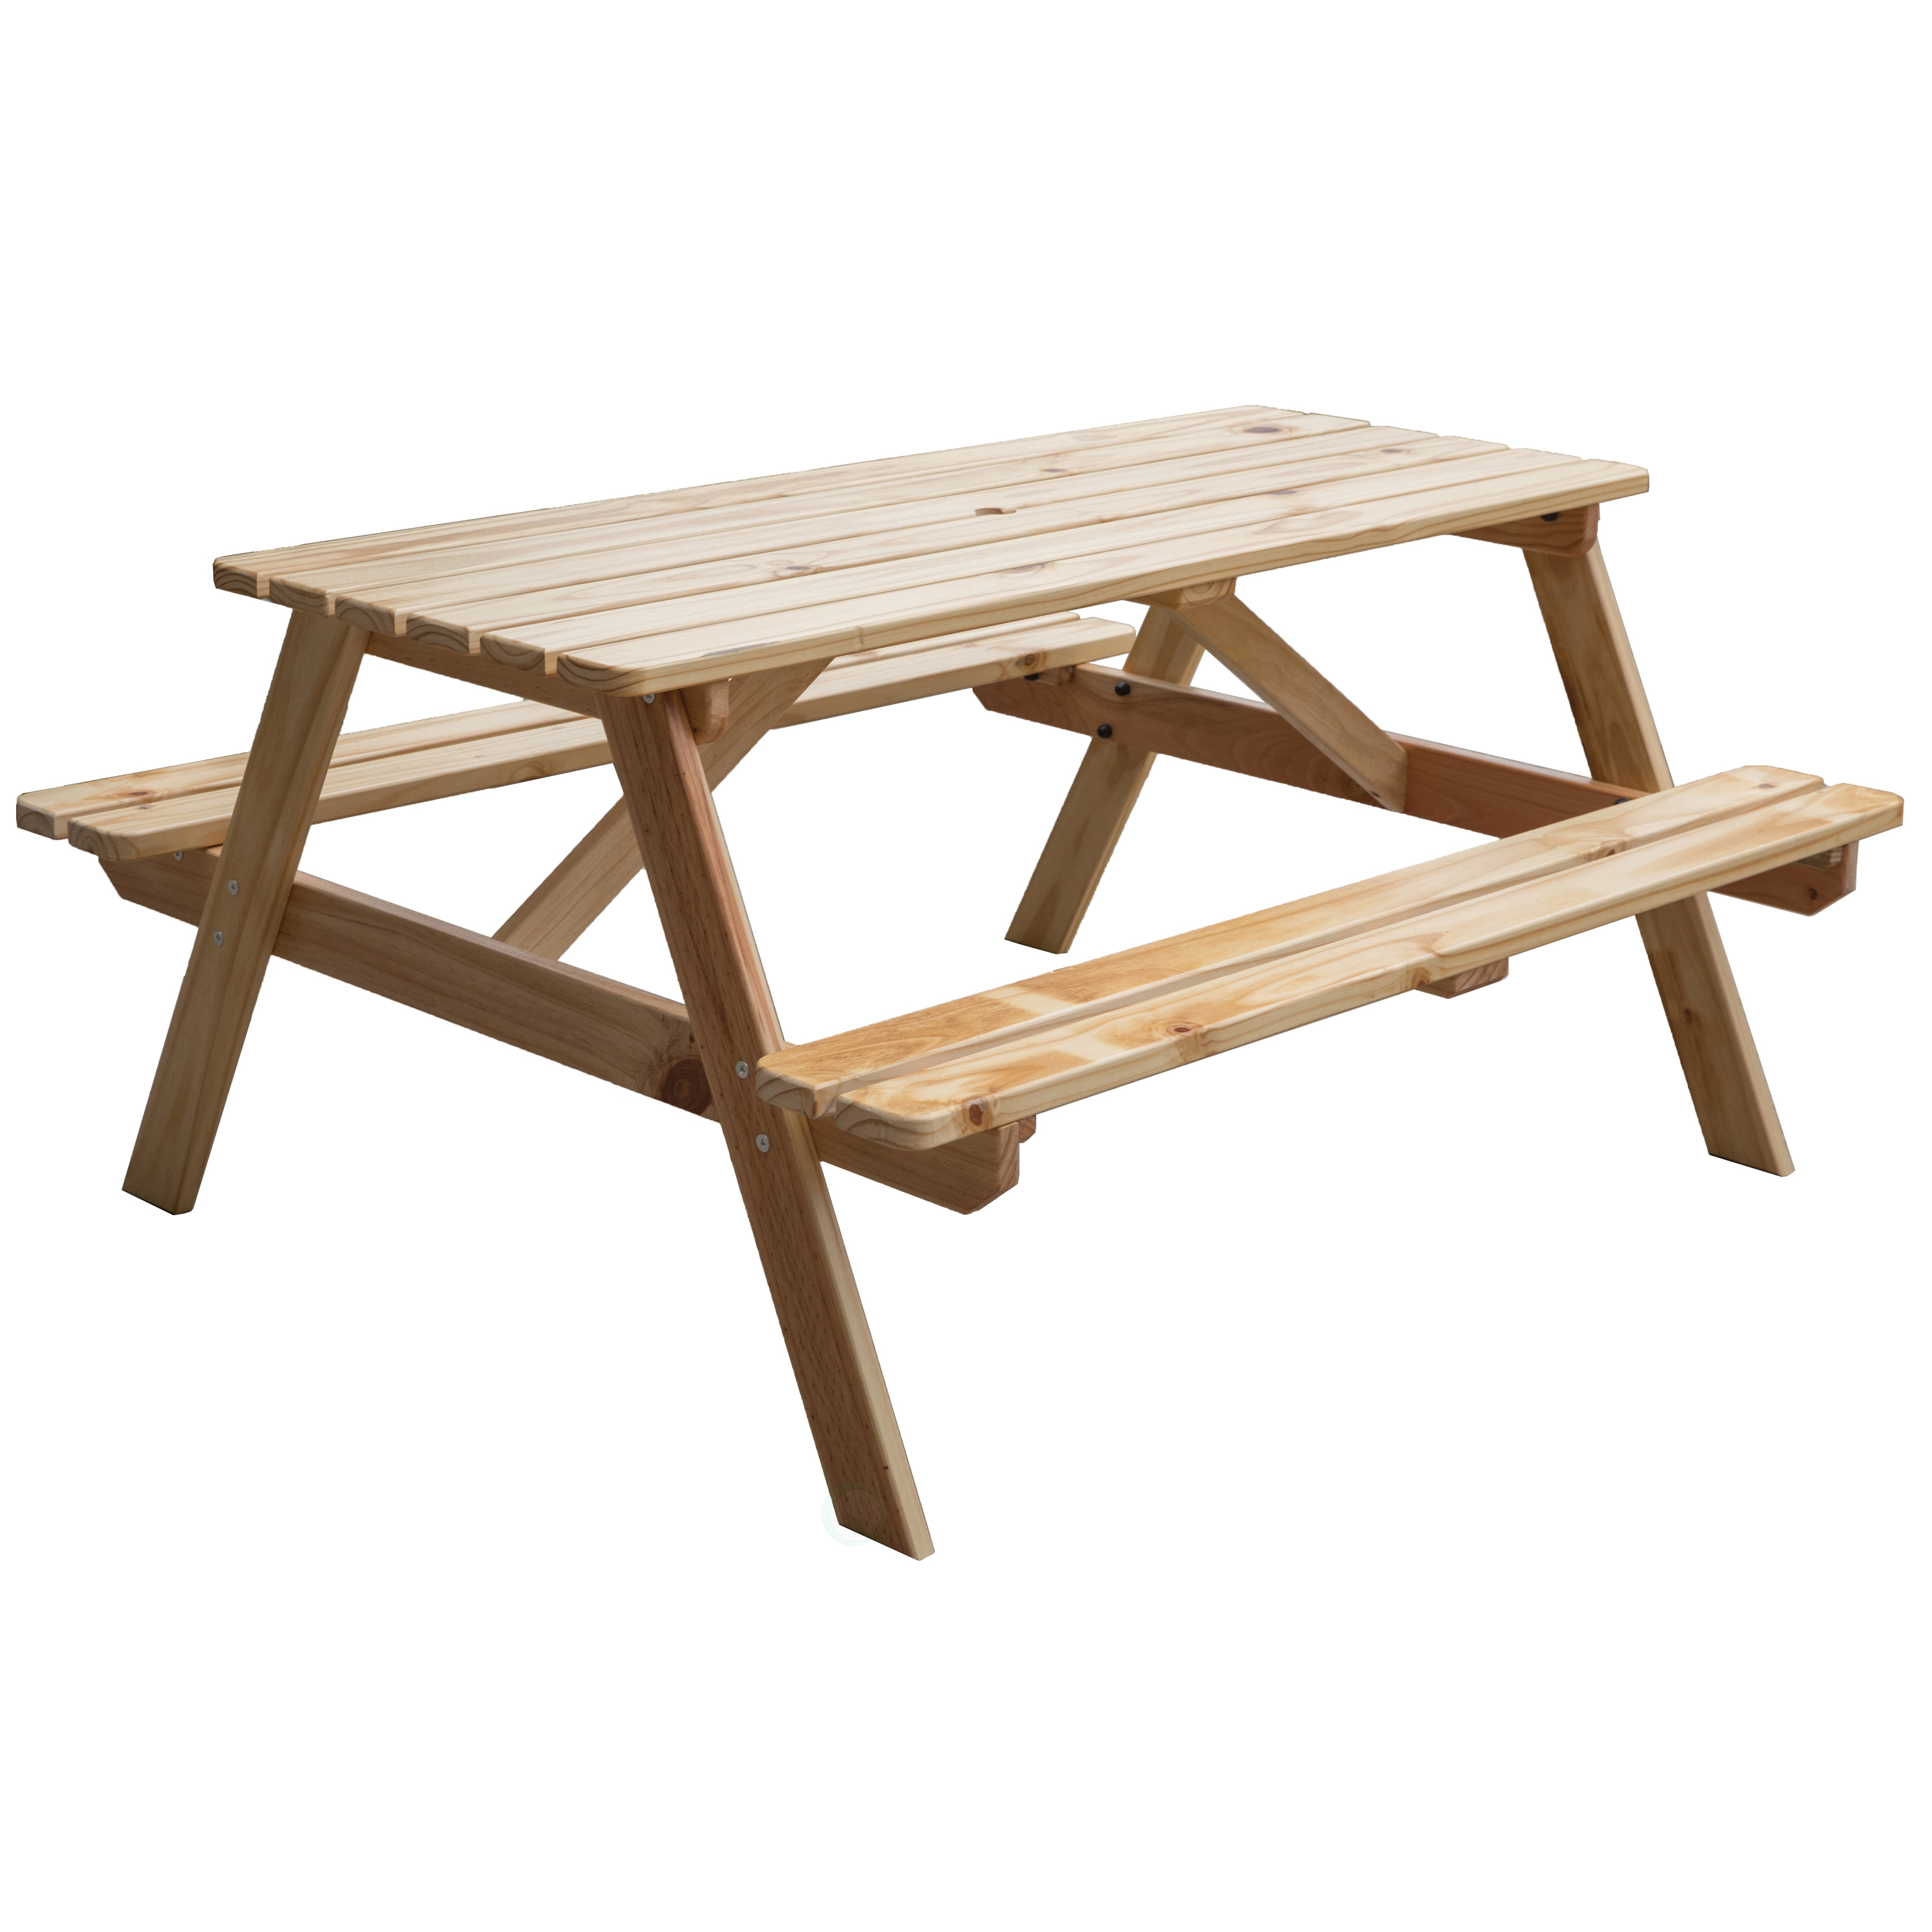 A-Frame Outdoor Wooden Patio Deck Garden Picnic Table - image 1 of 10